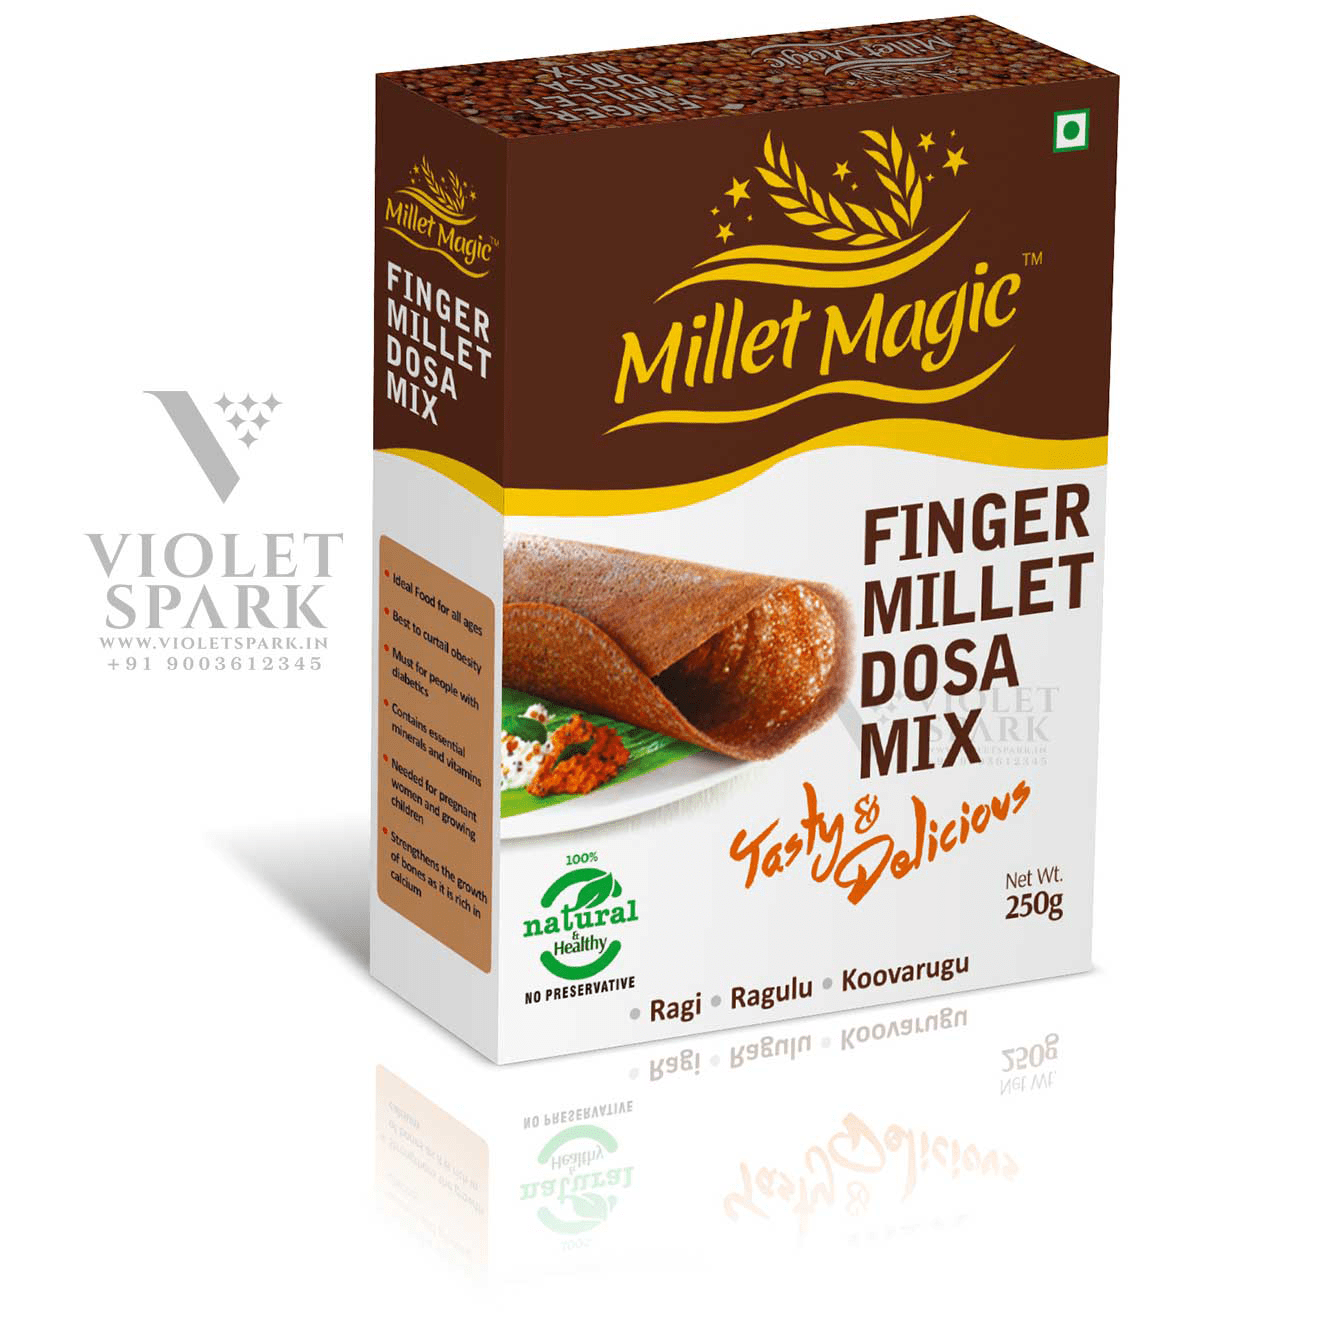 Millet Magic Finger Millet Dosa Mix Branding Packaging Design Digital Marketing in Malayasia by Violet Spark